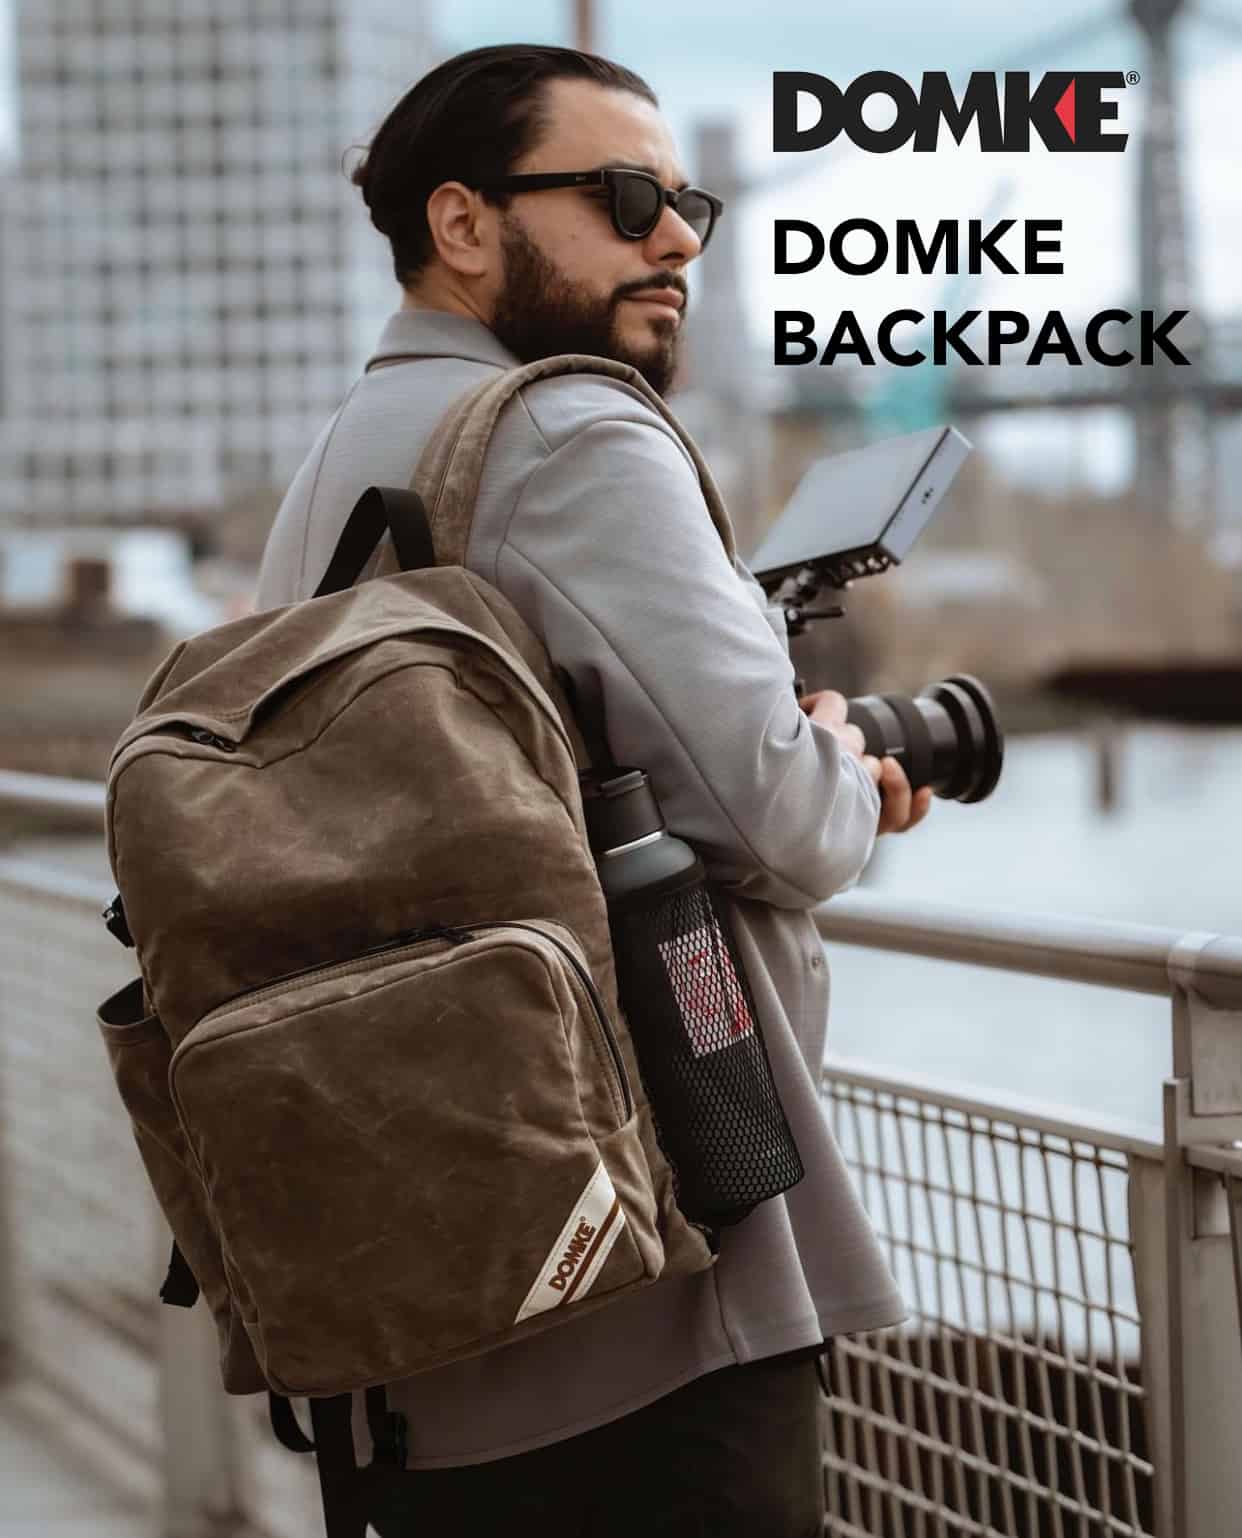 Domke Backpack